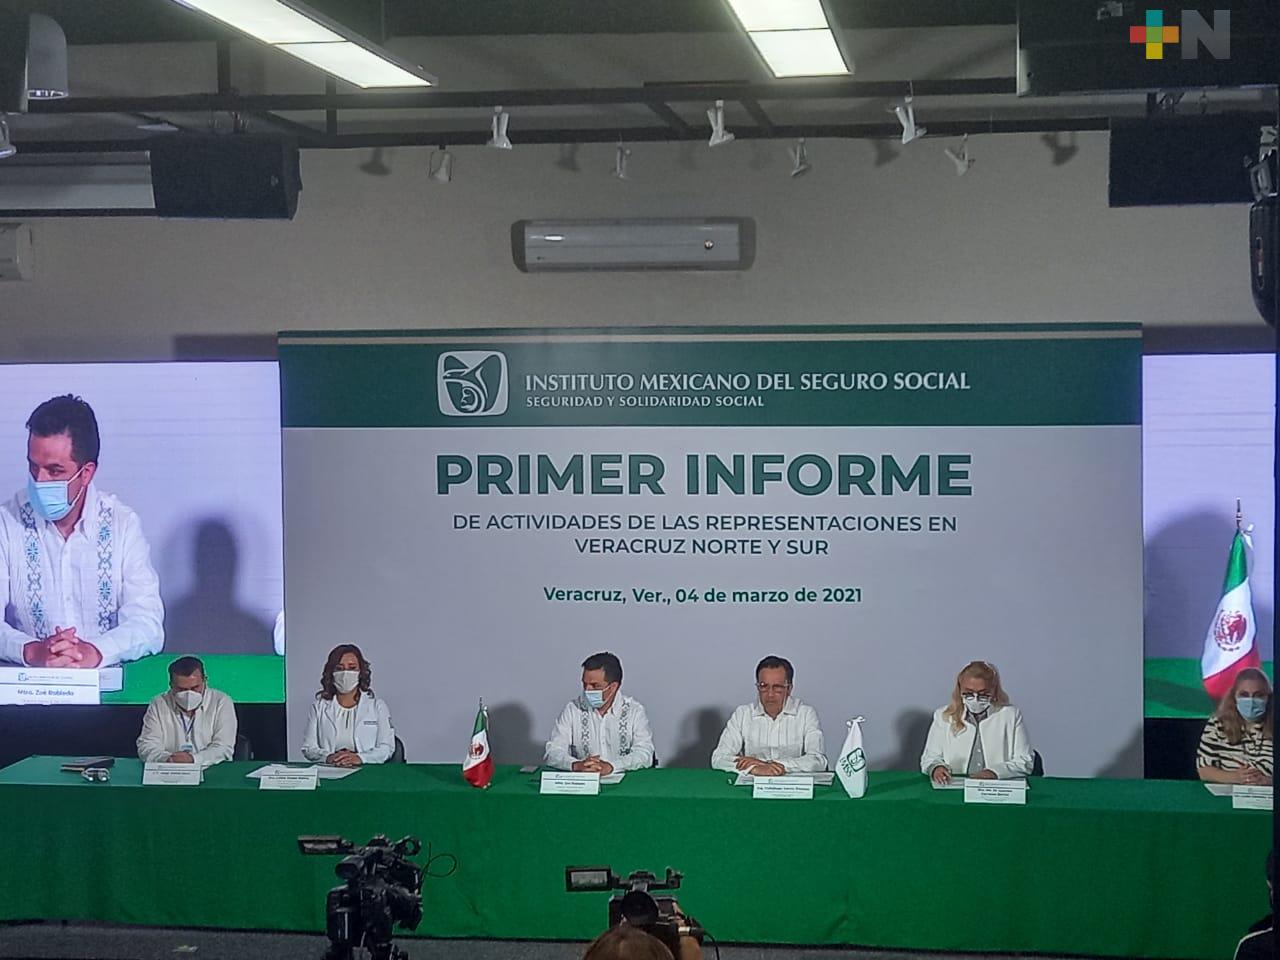 Rescate de instituciones públicas como el IMSS, ha permitido a México afrontar emergencia sanitaria: Cuitláhuac García Jiménez